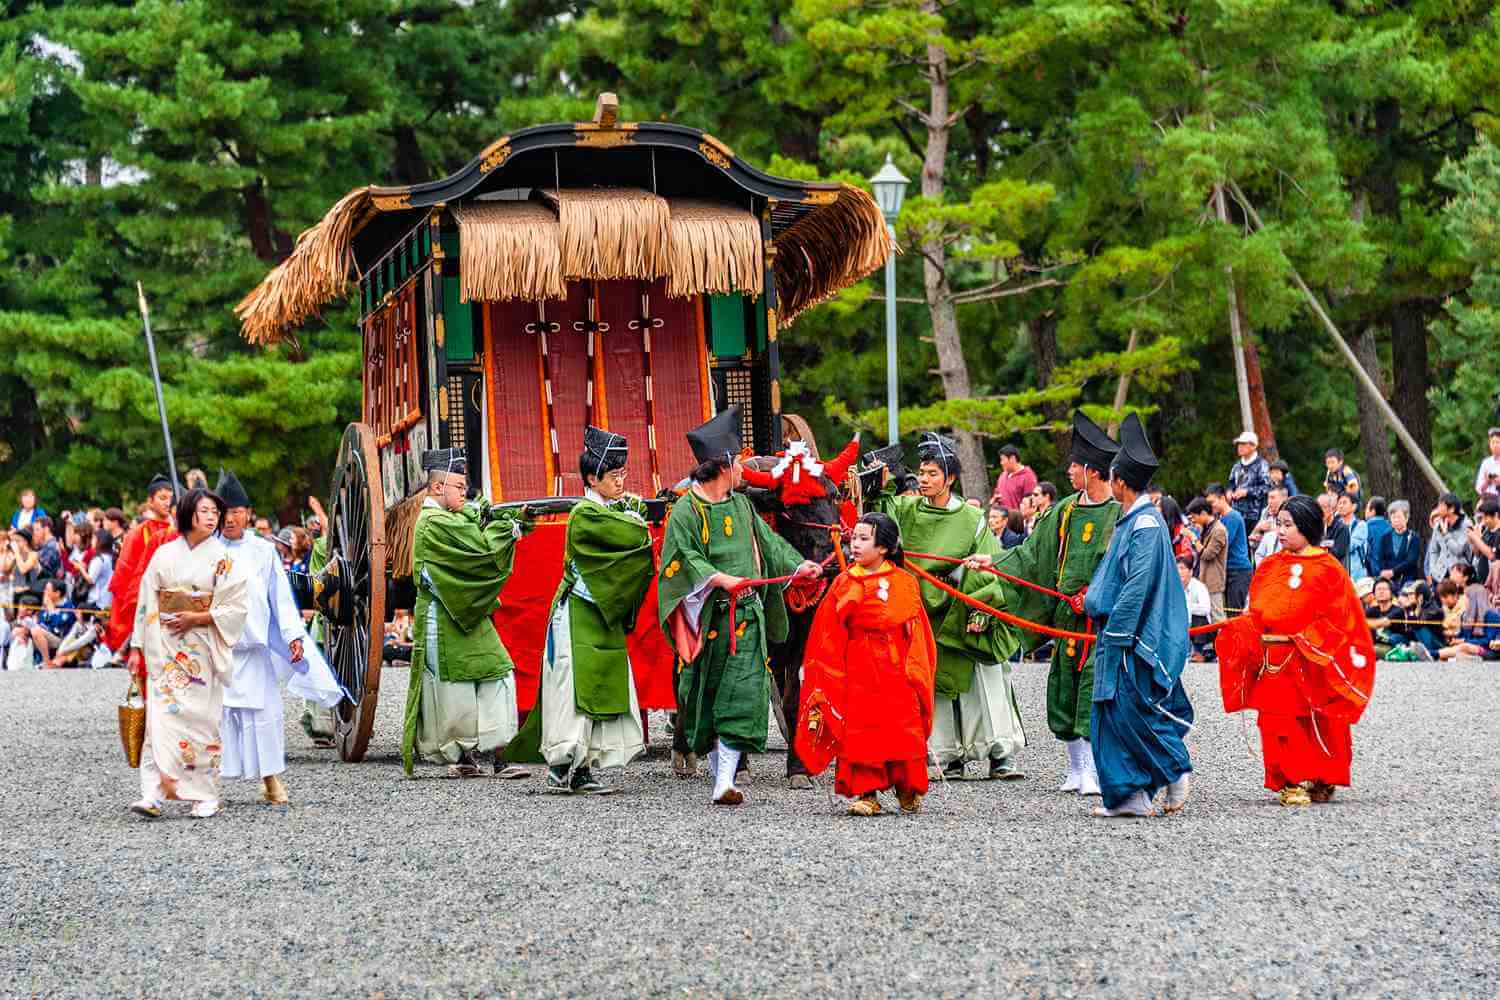 Photos: The Jidai Matsuri Festival in Kyoto